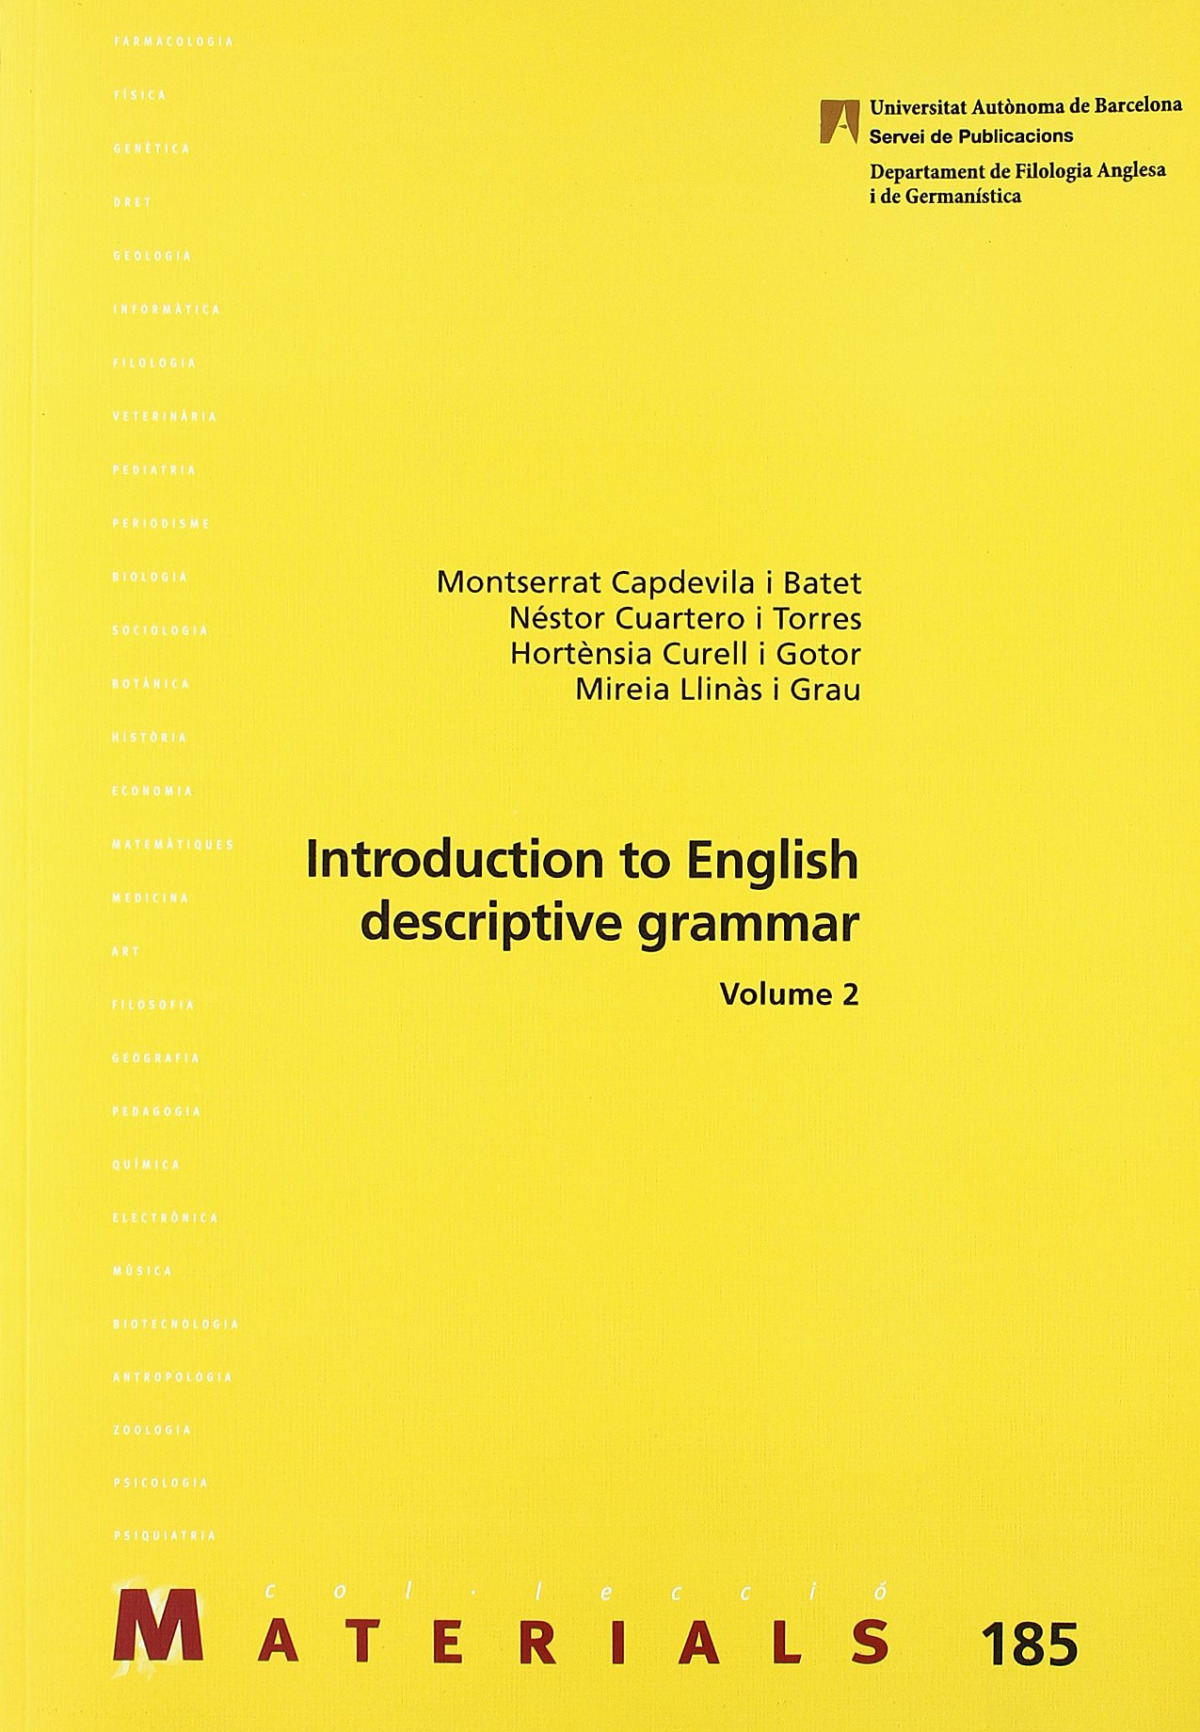 Introduction to English descriptive grammar MATERIALS 185 - Llinàs i Grau, Mireia/ Curell i Gotor, H